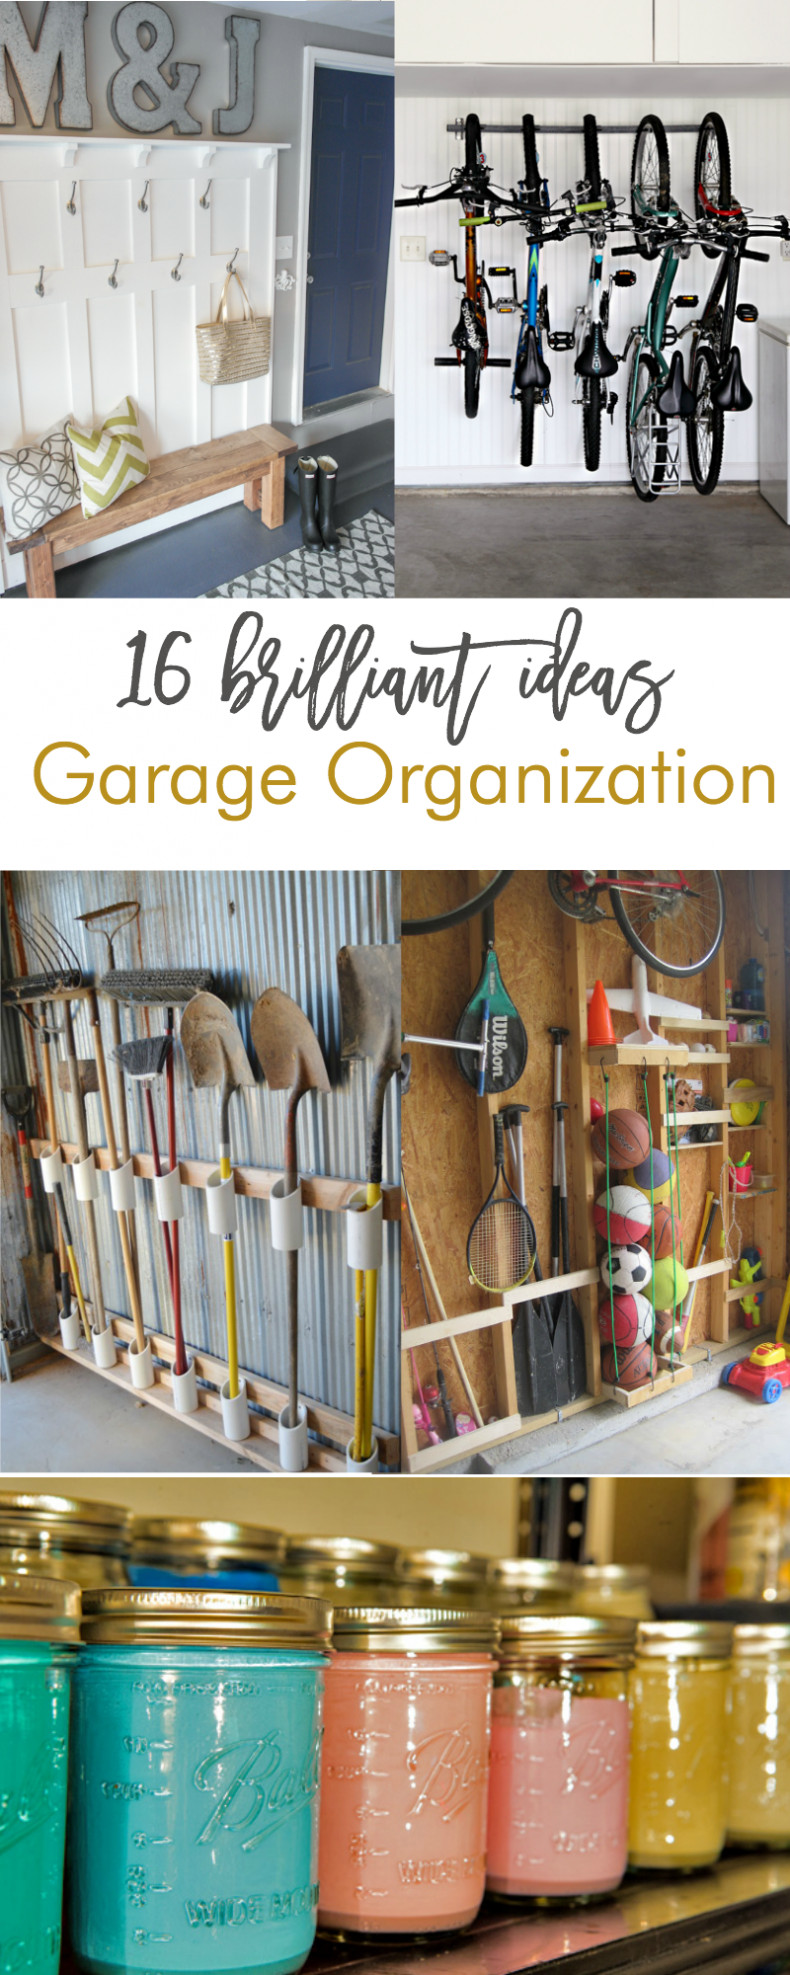 DIY Organizing Projects
 16 Brilliant DIY Garage Organization Ideas